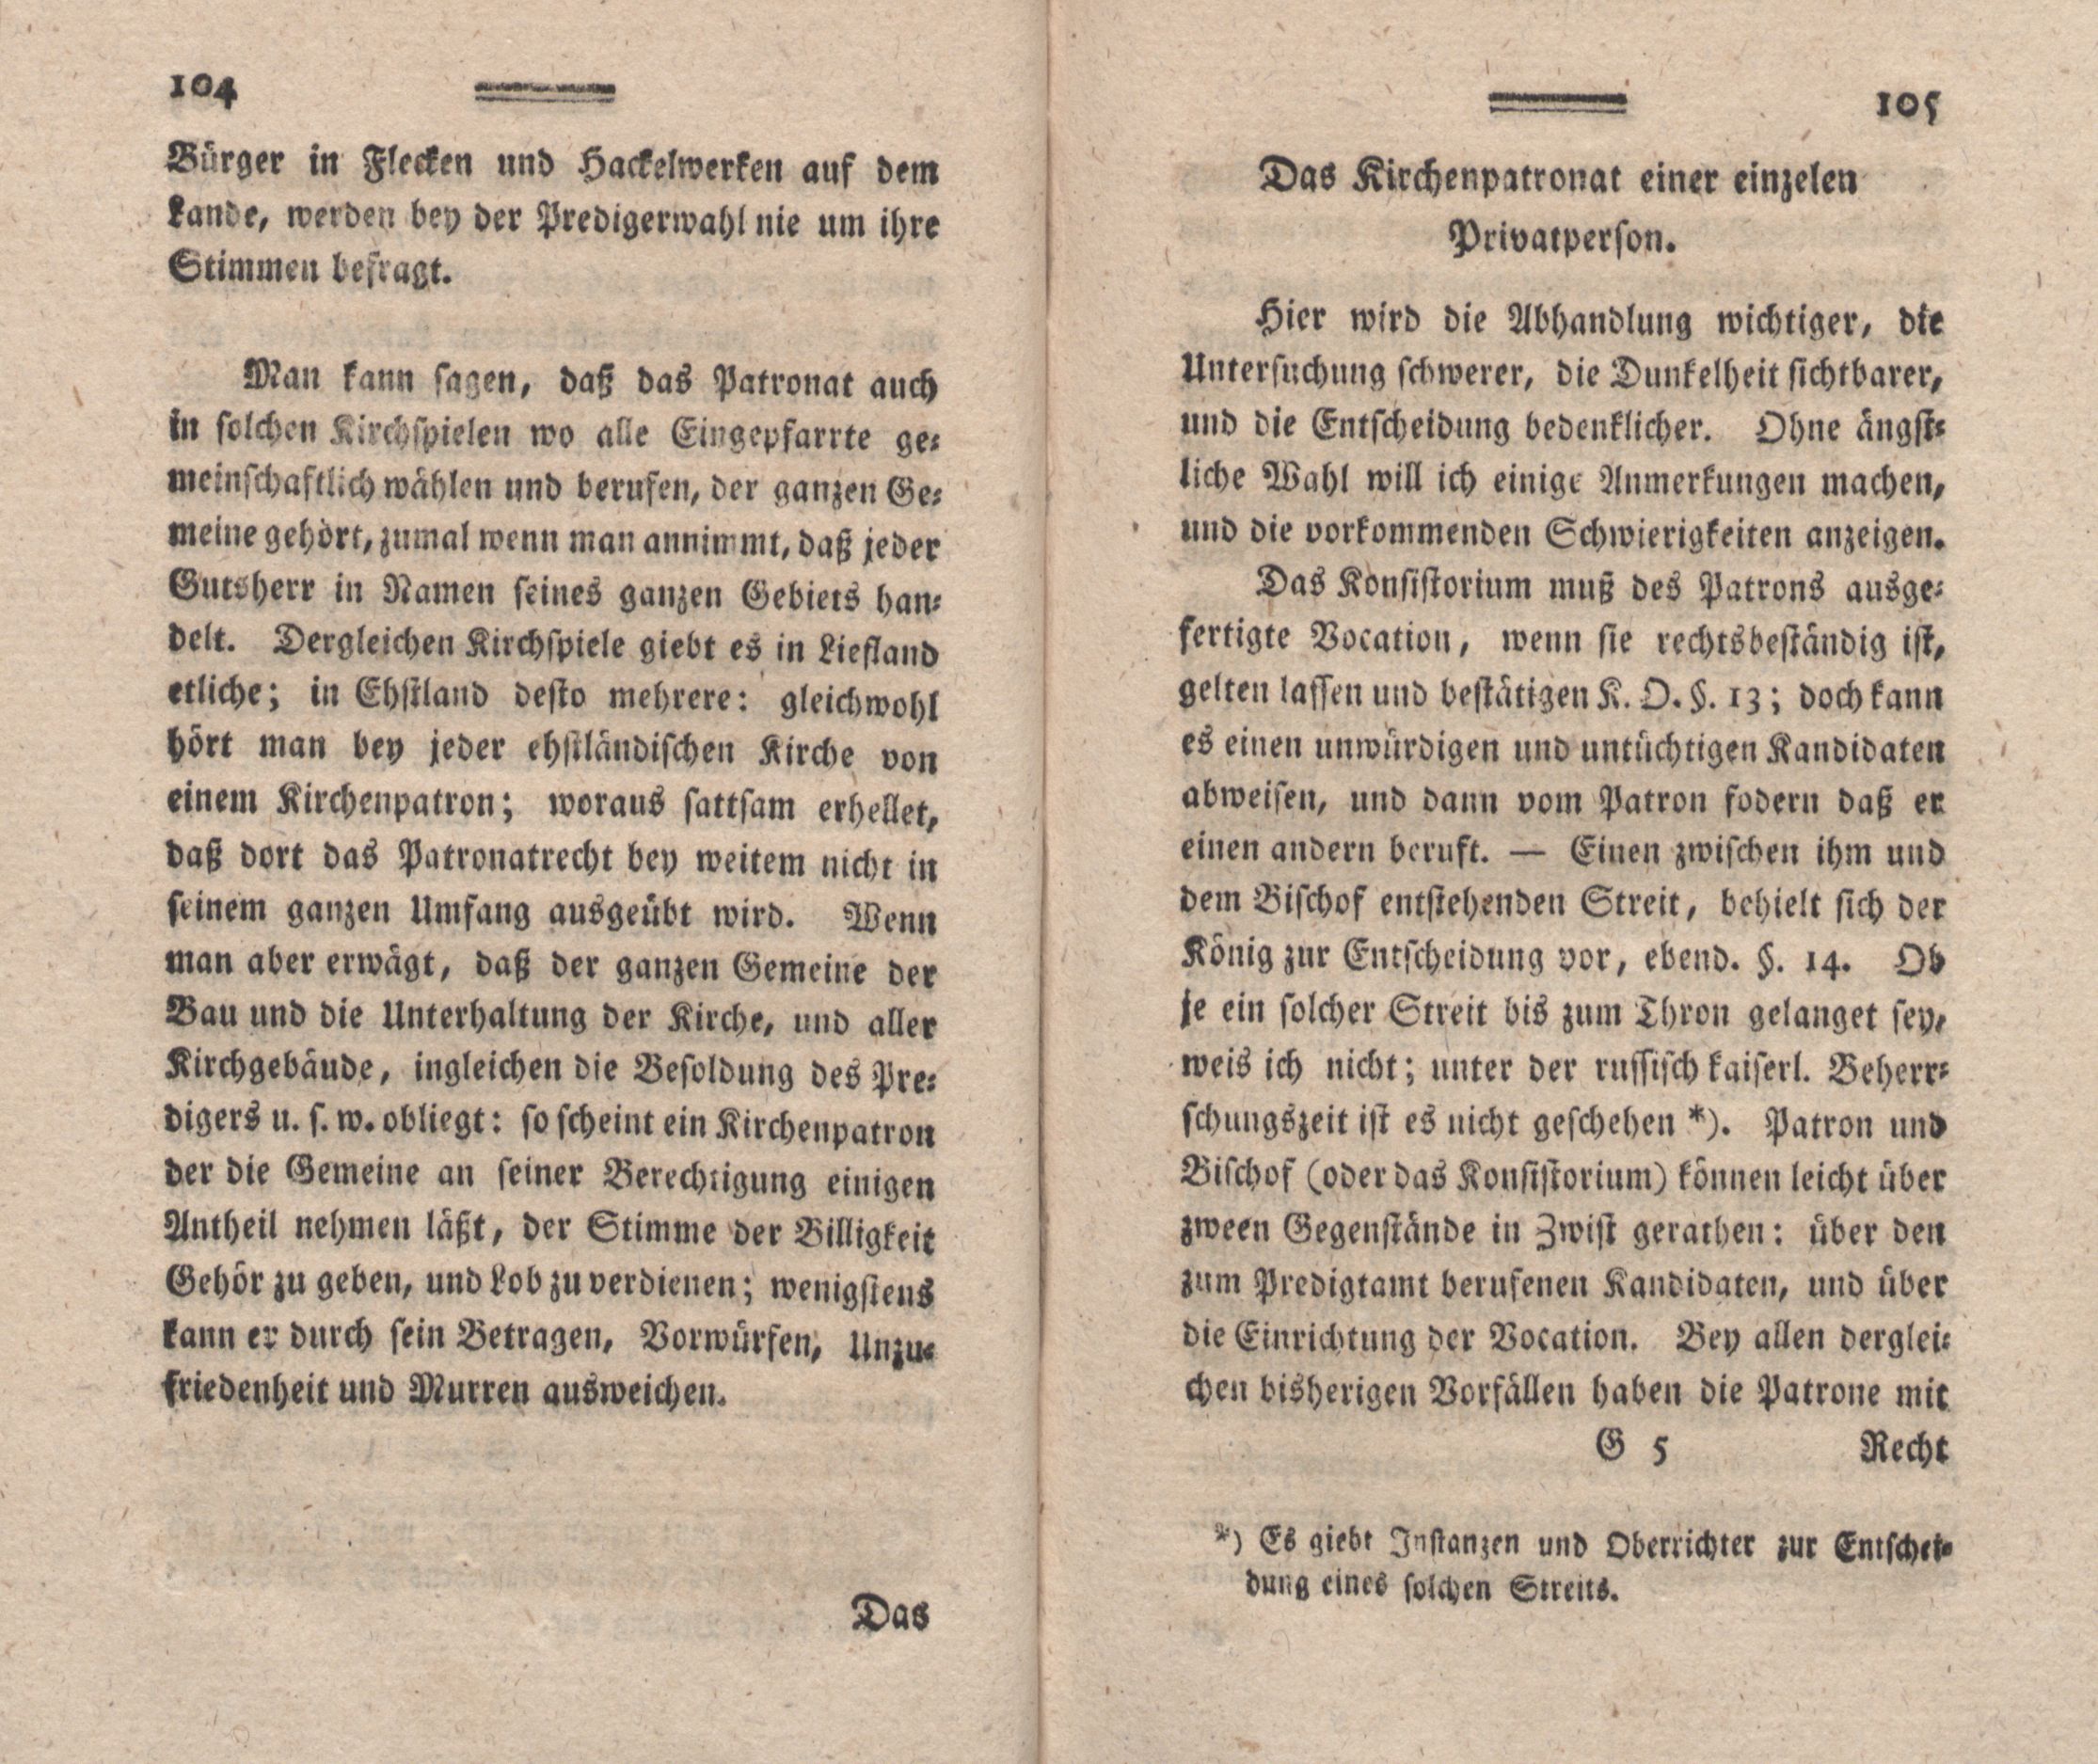 Nordische Miscellaneen [02] (1781) | 53. (104-105) Main body of text